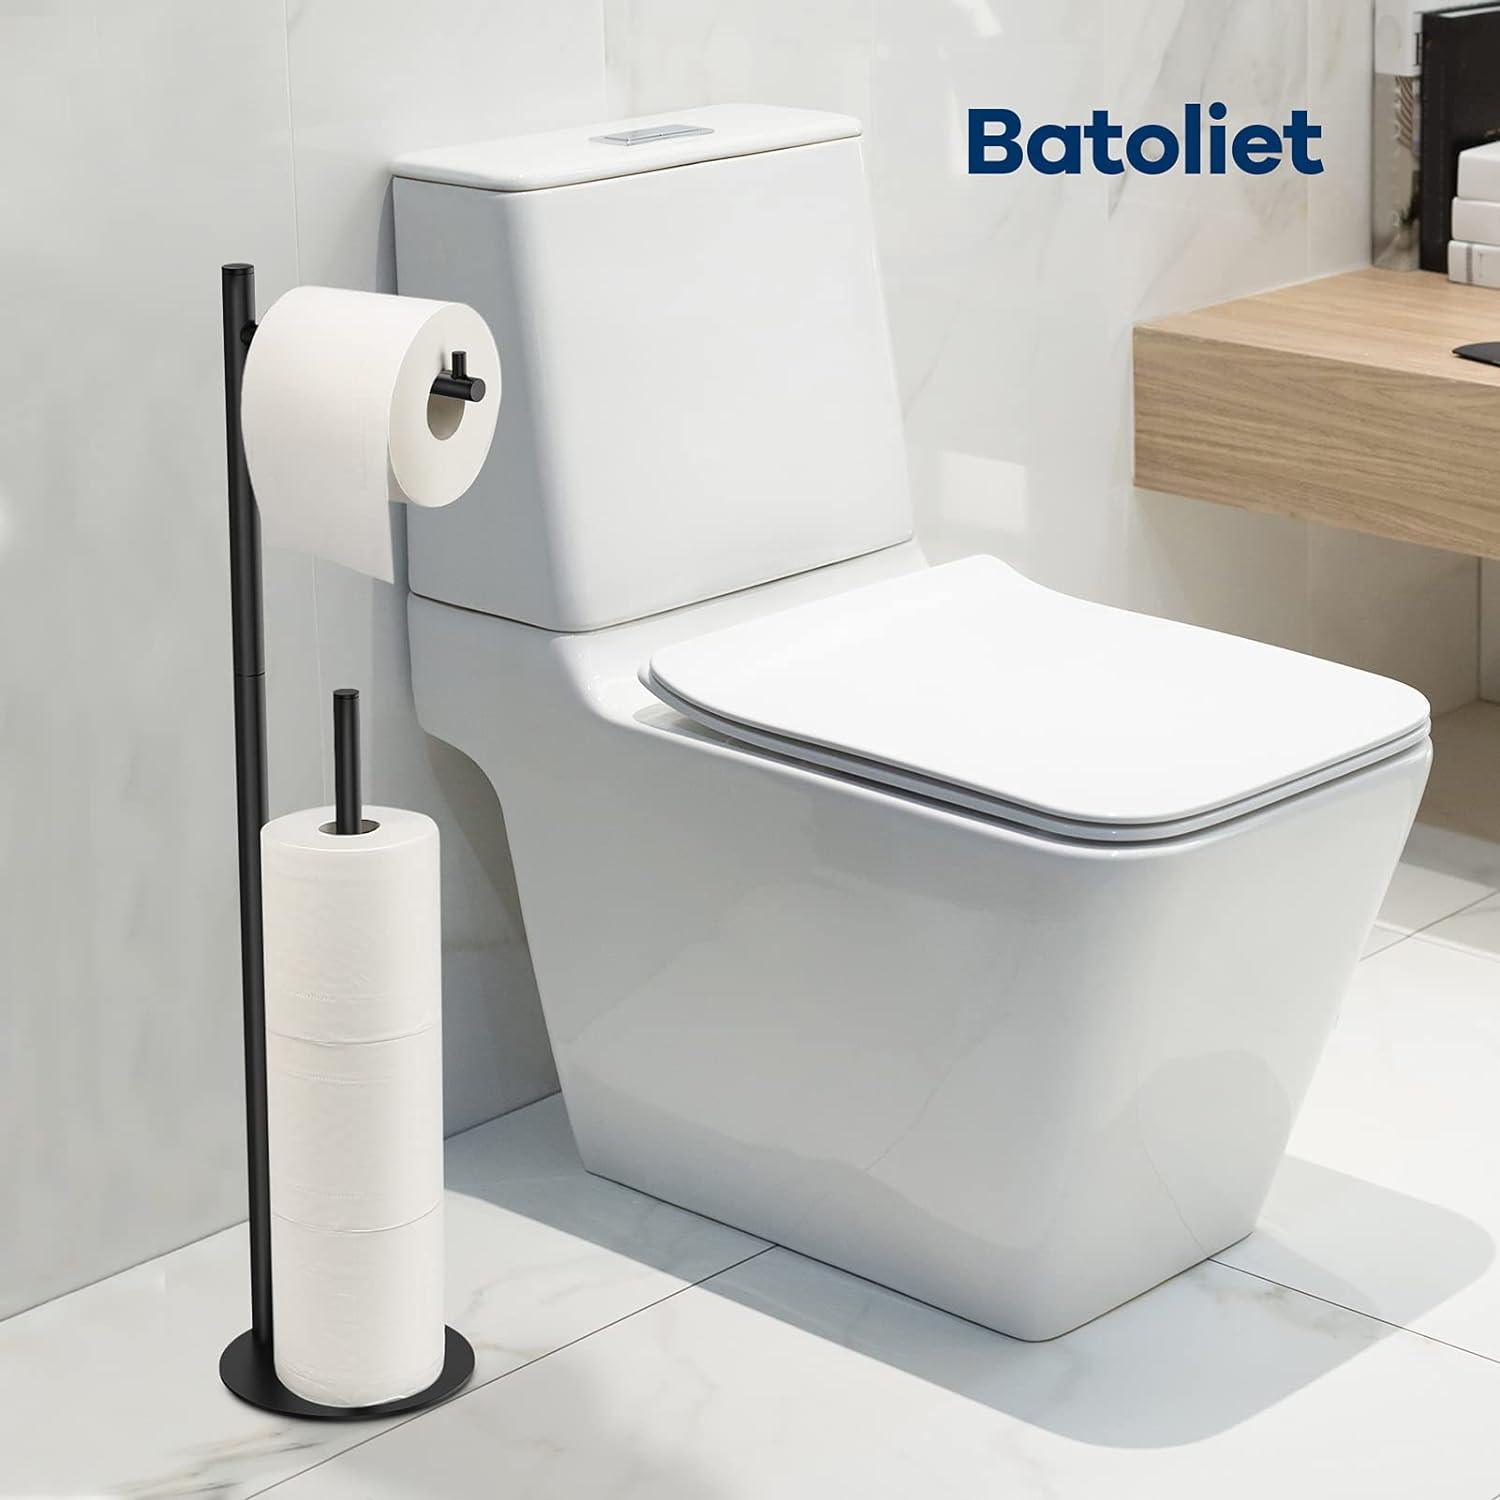 SimpleHouseware - Soporte para rollo de papel higiénico para baño con  soporte para teléfono celular, color bronce